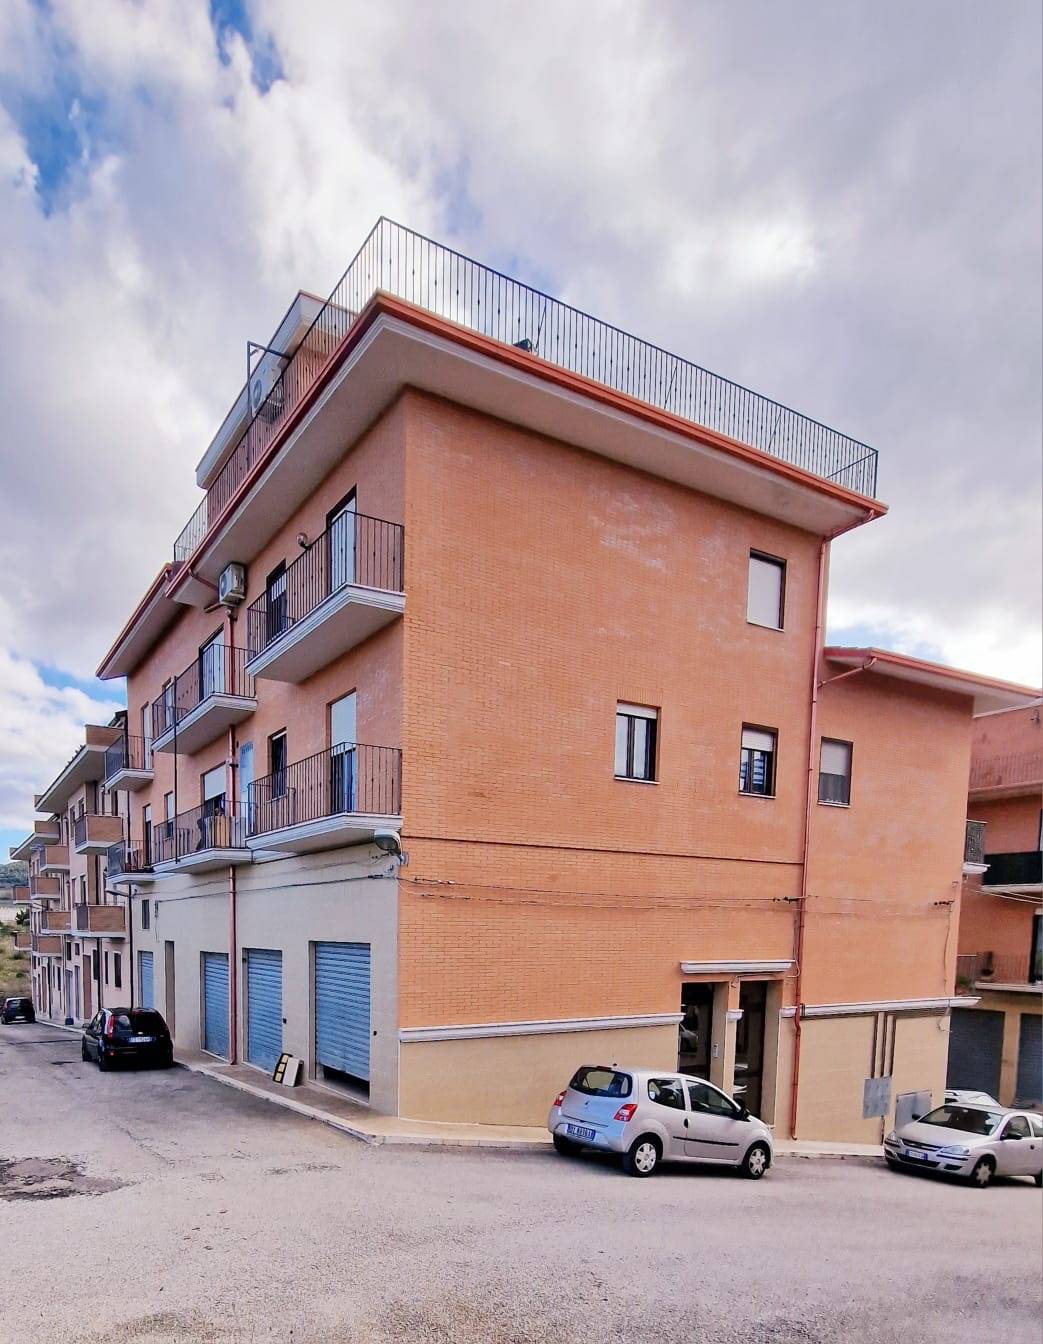 Appartamento in vendita a San Nicandro Garganico, 3 locali, prezzo € 67.000 | PortaleAgenzieImmobiliari.it